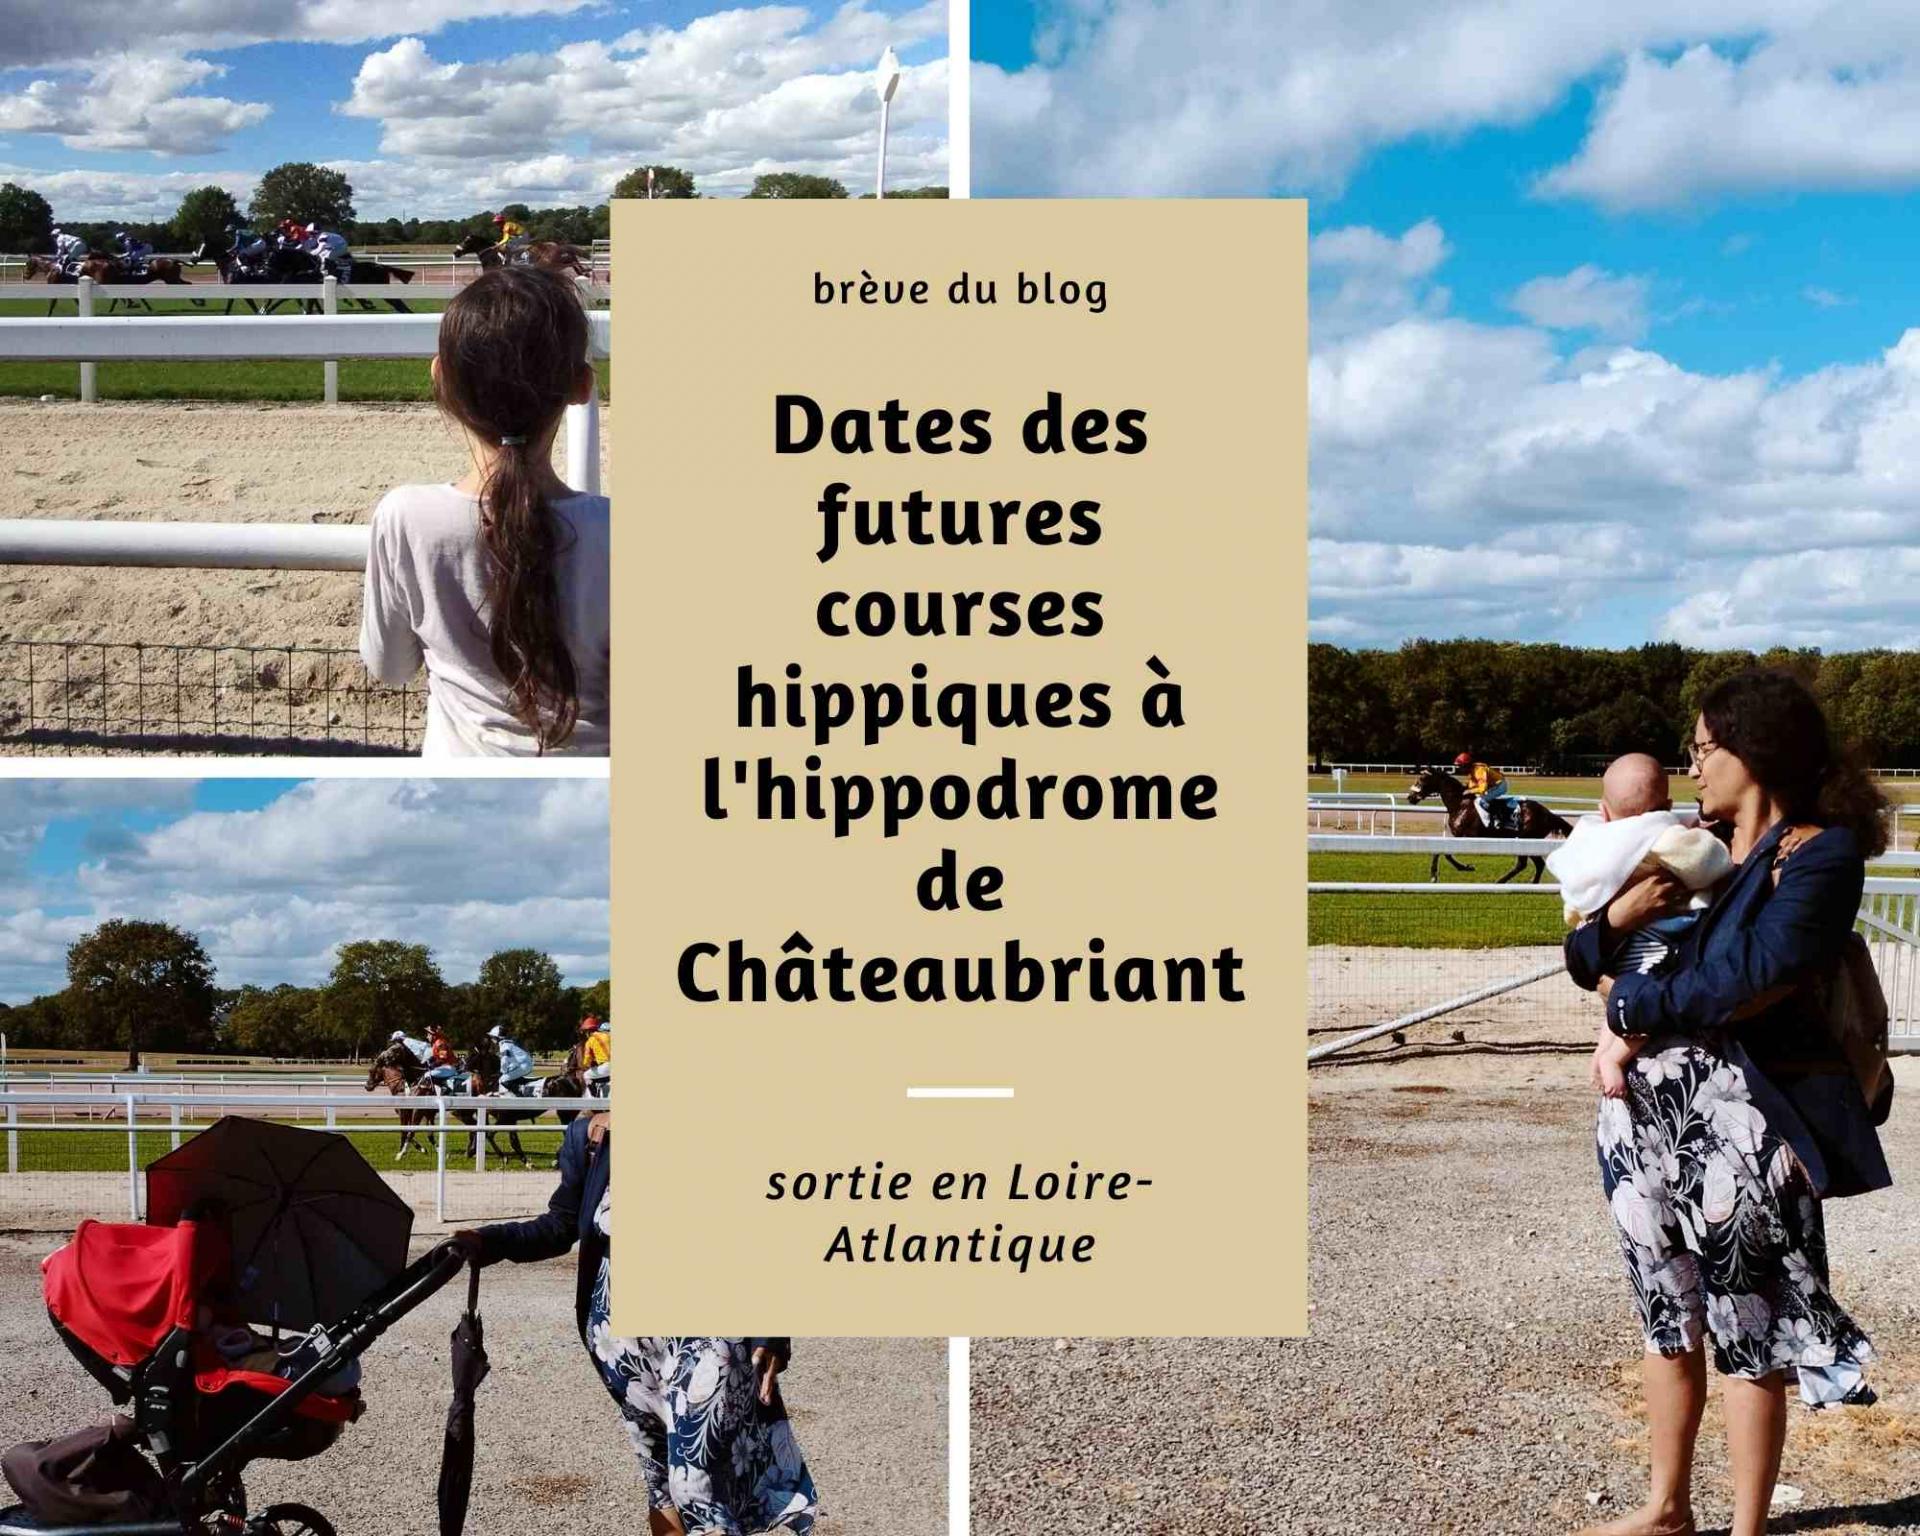 Dates des futures courses hippiques a l hippodrome de chateaubriant